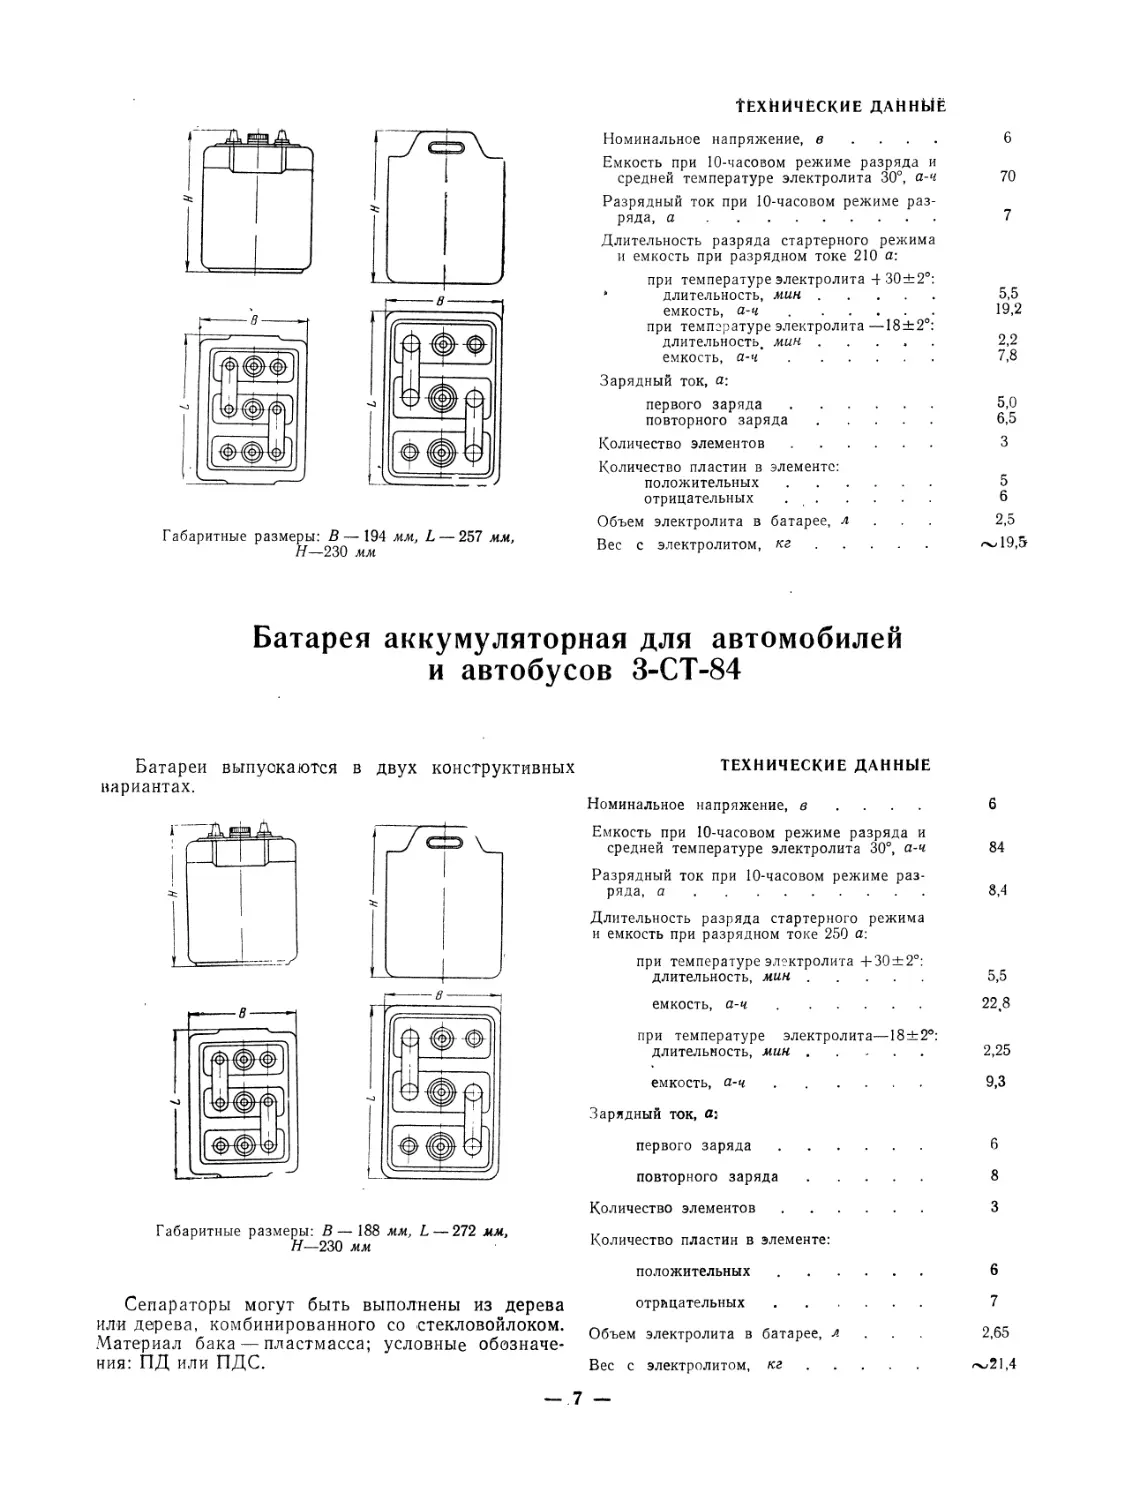 Батарея аккумуляторная для автомобилей и автобусов З-СТ-84